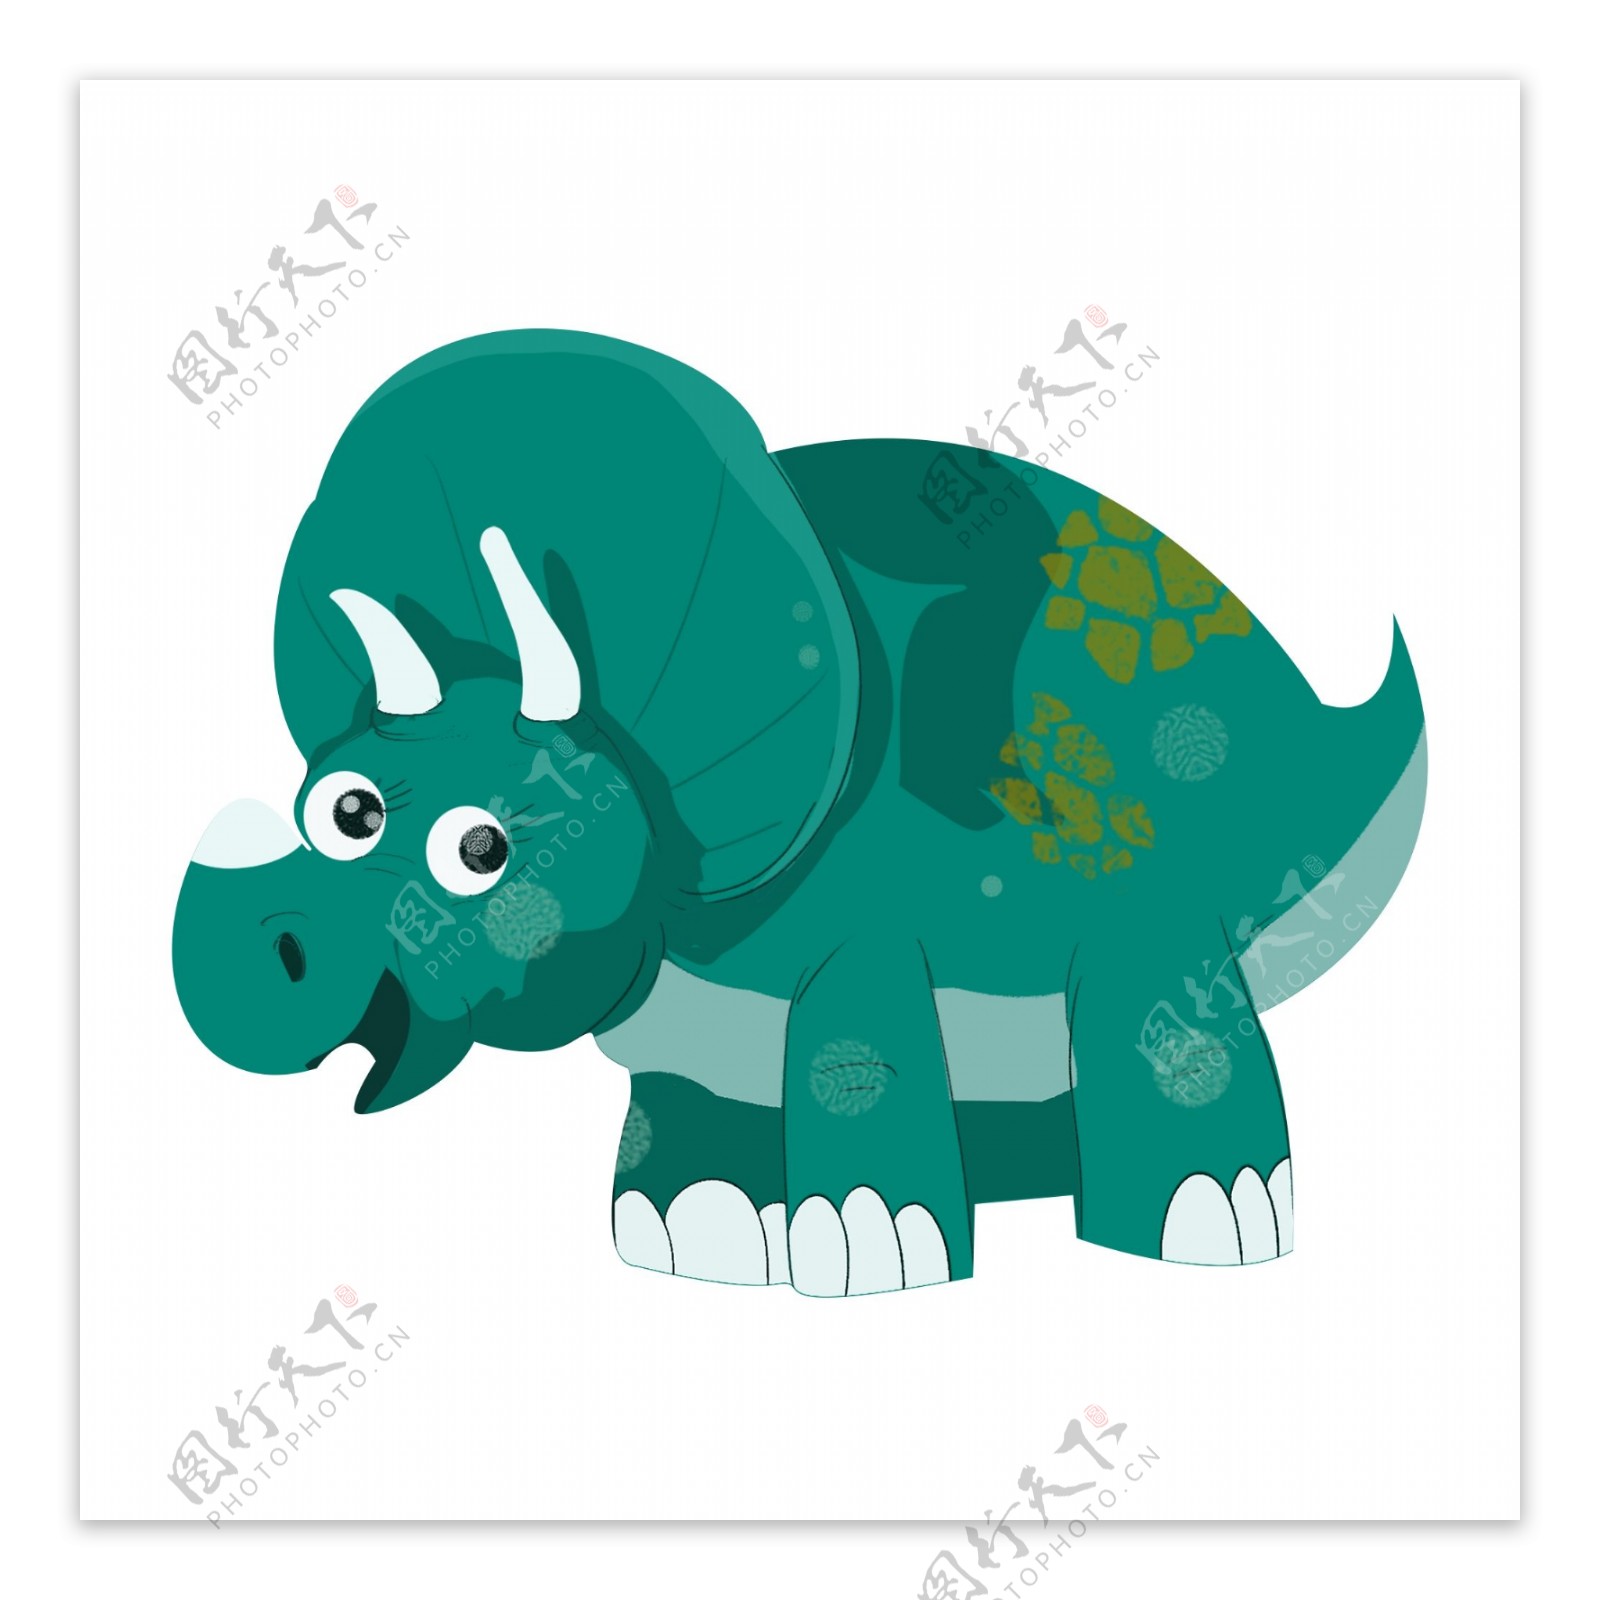 手绘创意绿色恐龙动物设计